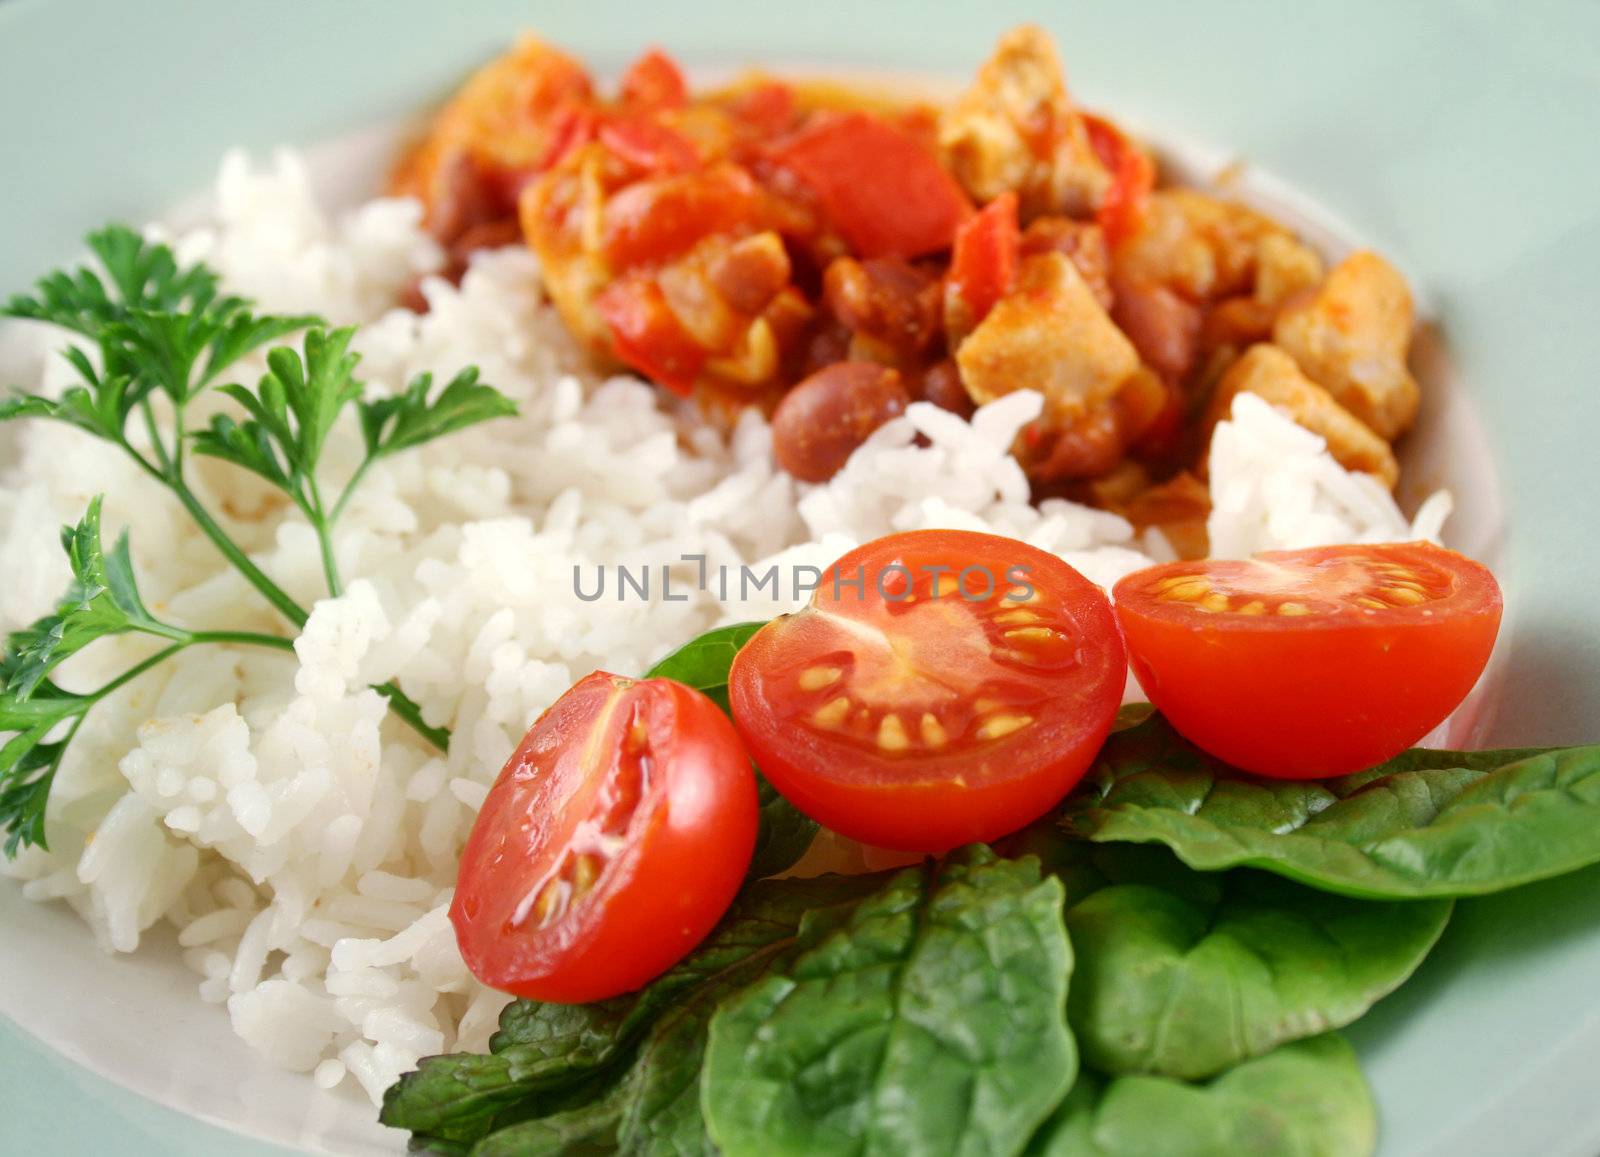 Chicken And Lentil Stew With Rice 1 by jabiru